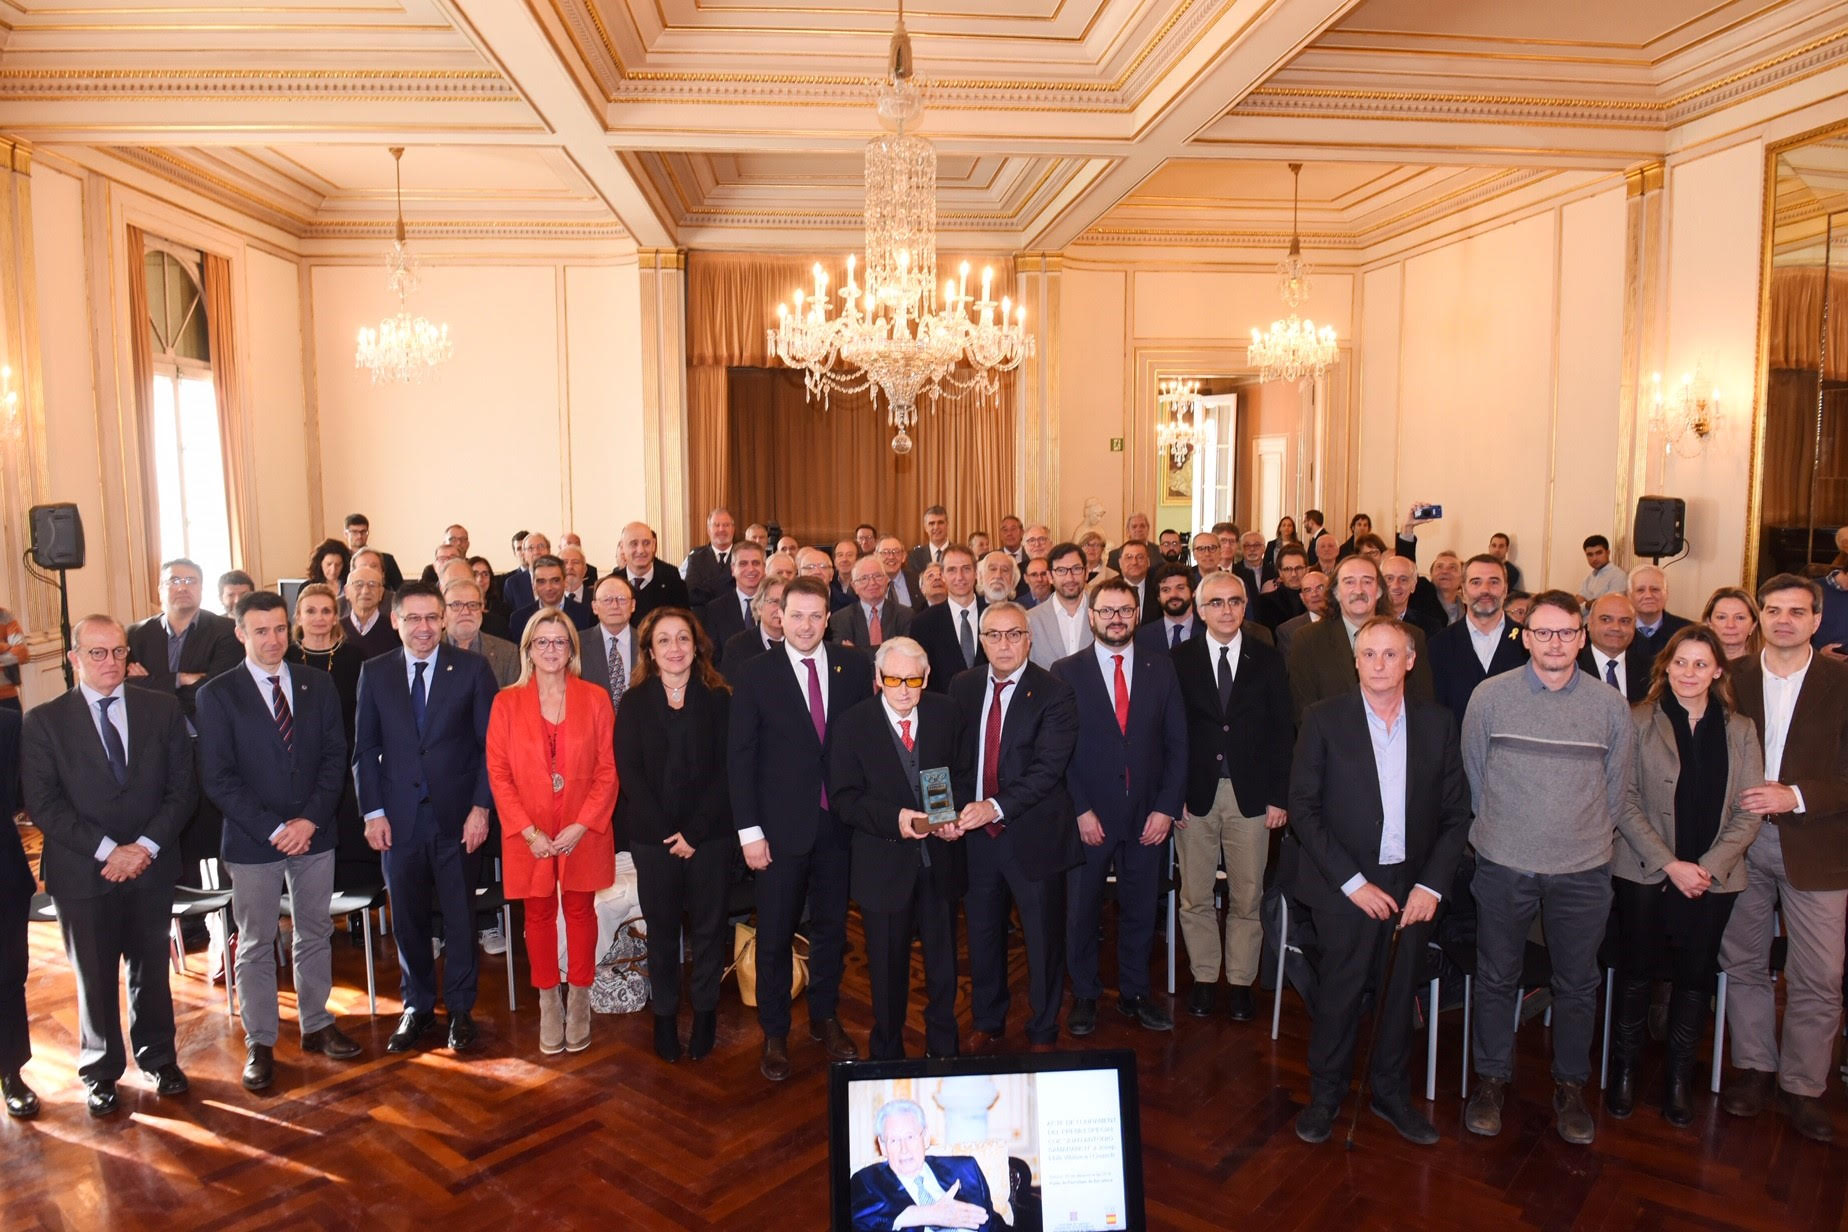 Foto de grup de tots els representants institucionals presents en l'homenatge / GENERALITAT DE CATALUNYA